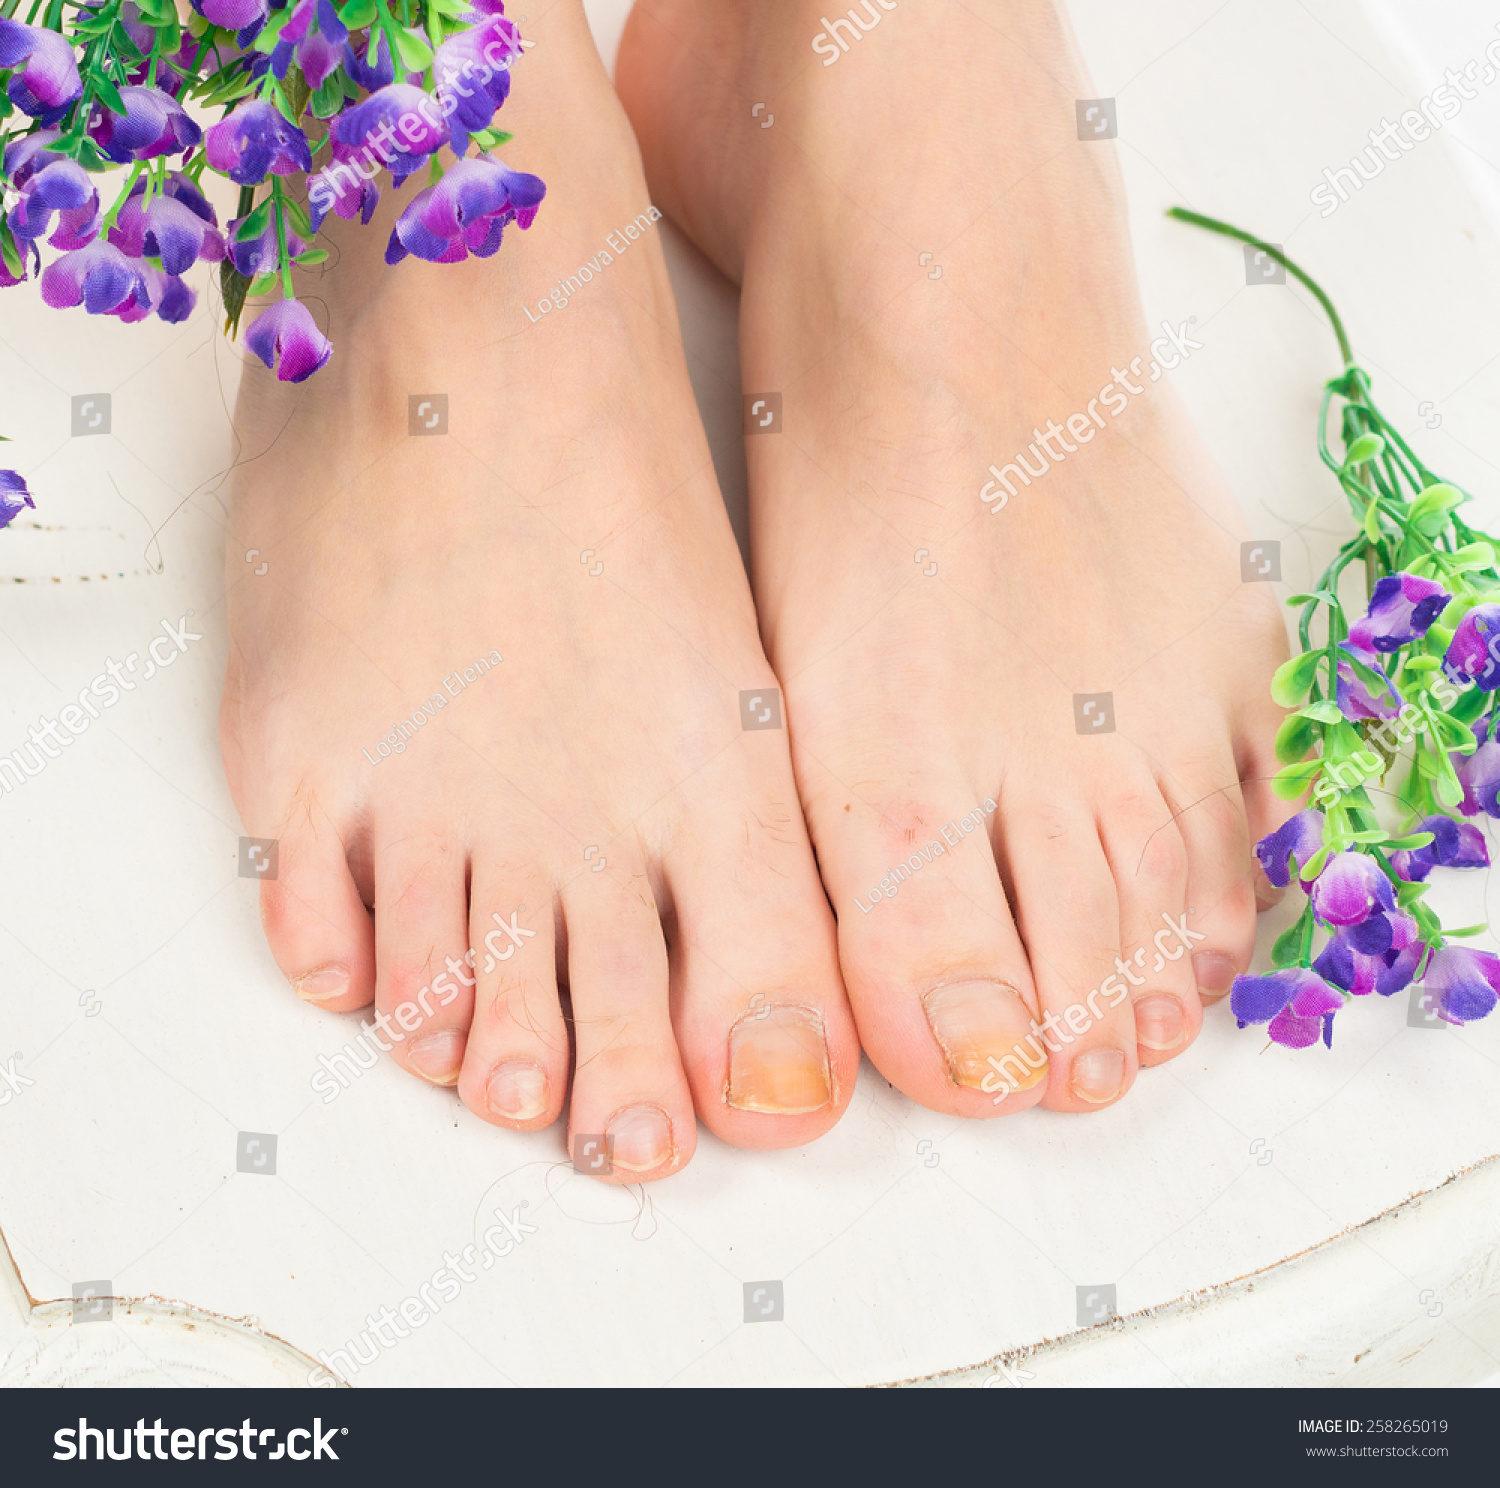 靠近人类的脚开裂和剥落的大脚趾脚趾指甲。脚